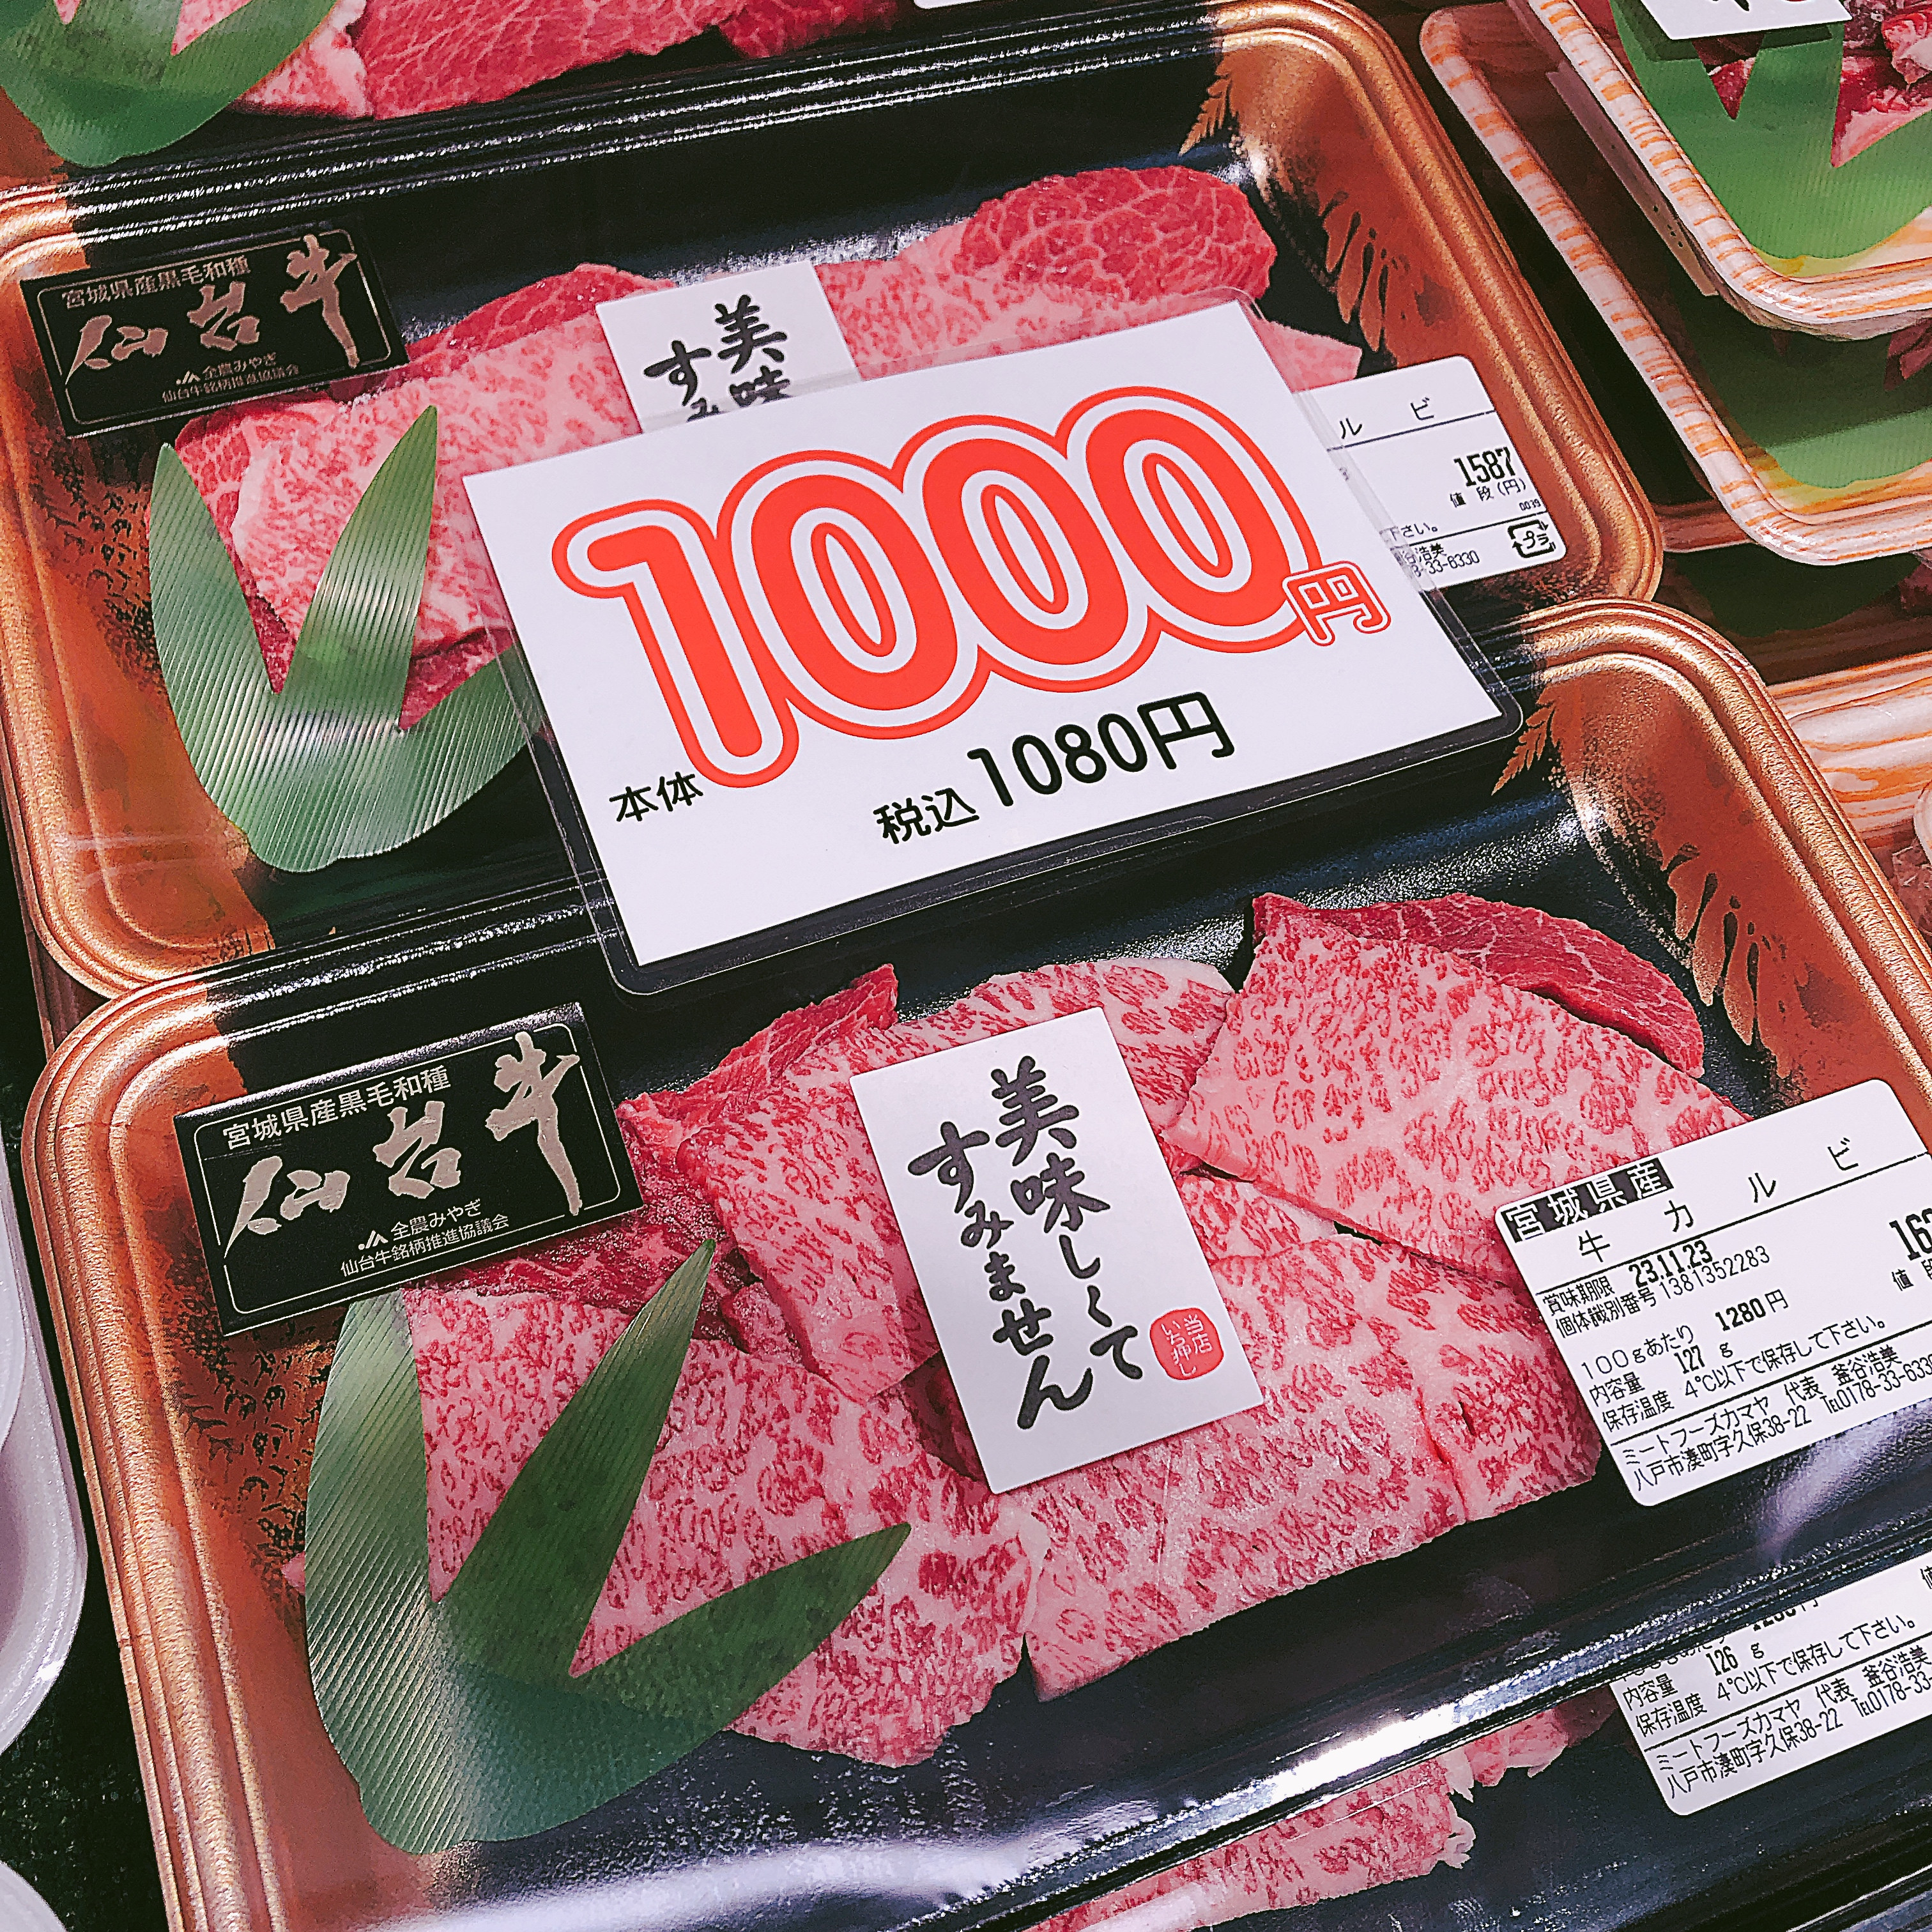 本日は宮城県産仙台牛カルビがお買得です。